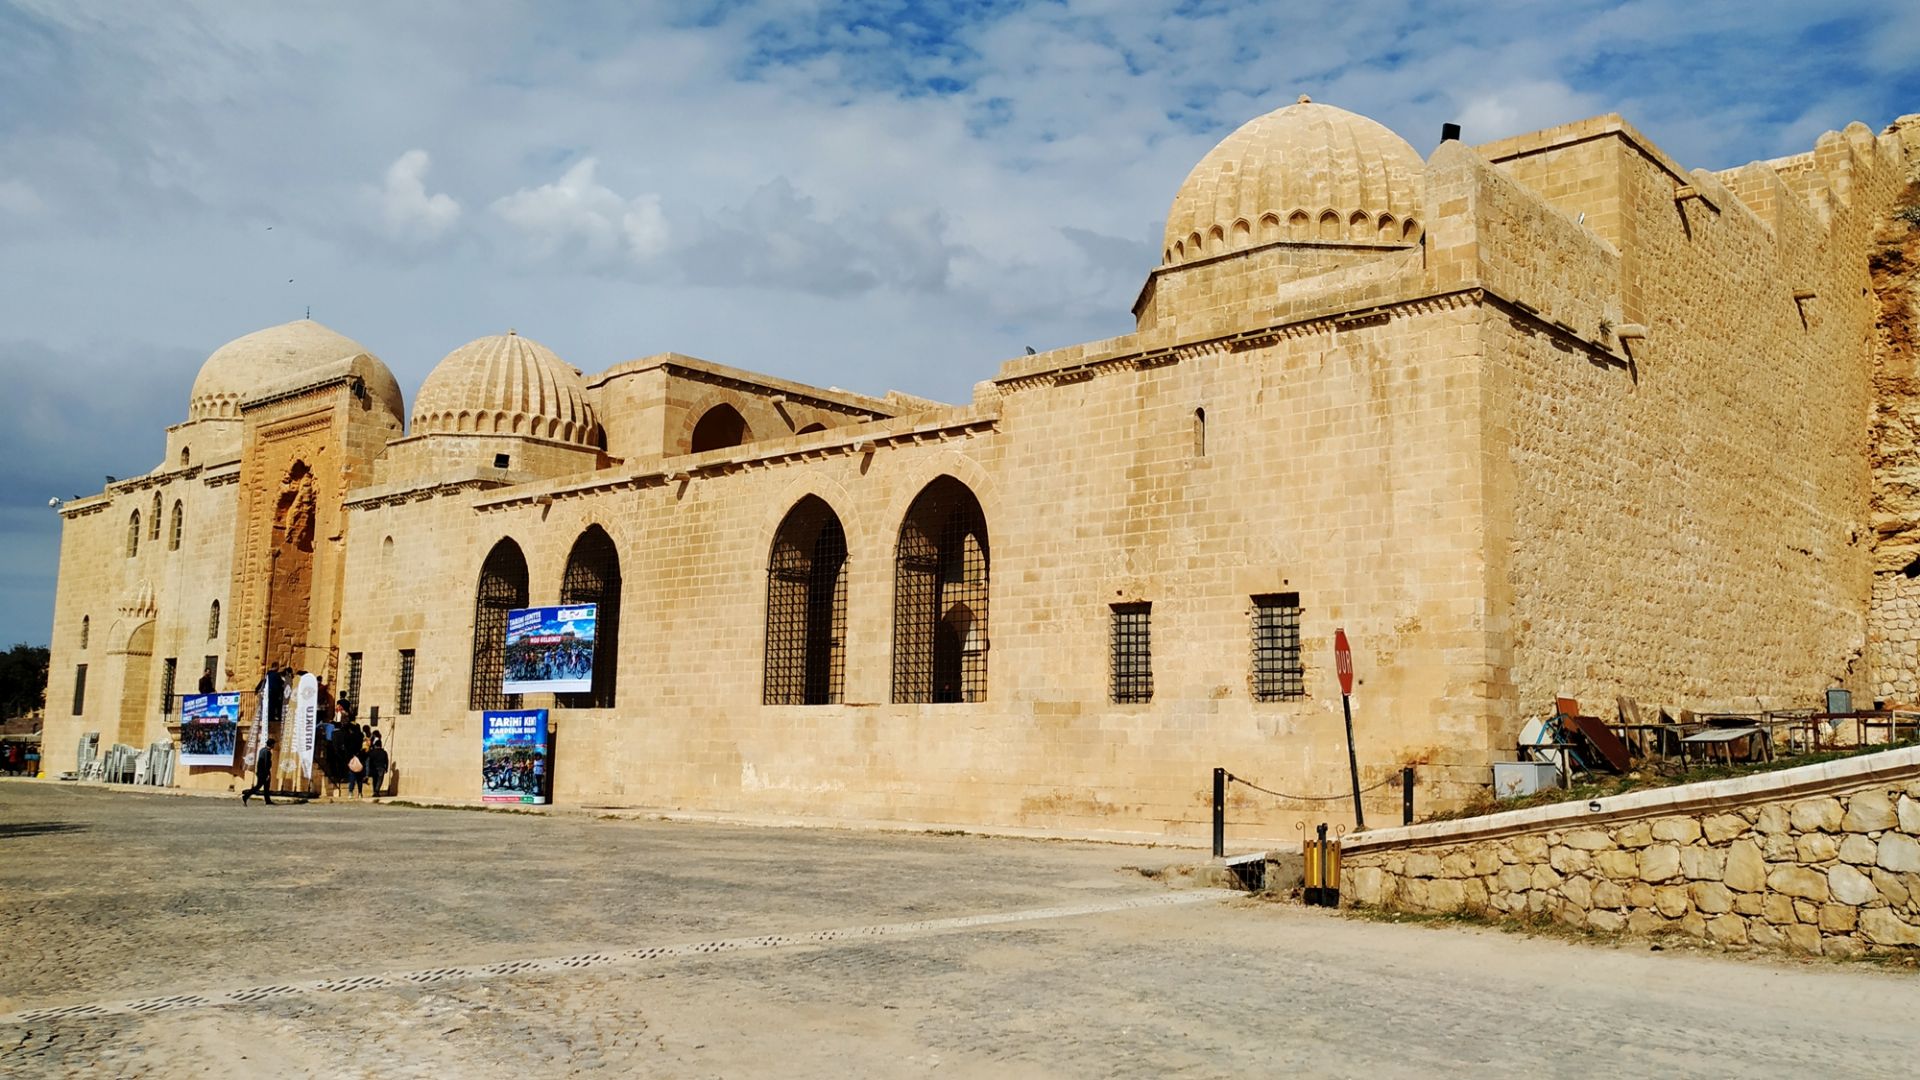 马尔丁的Kasimiye神学院这座神学院由两座覆盖在卡斯姆帕夏和她的妹妹的陵墓上的穹顶组成。这里的亮